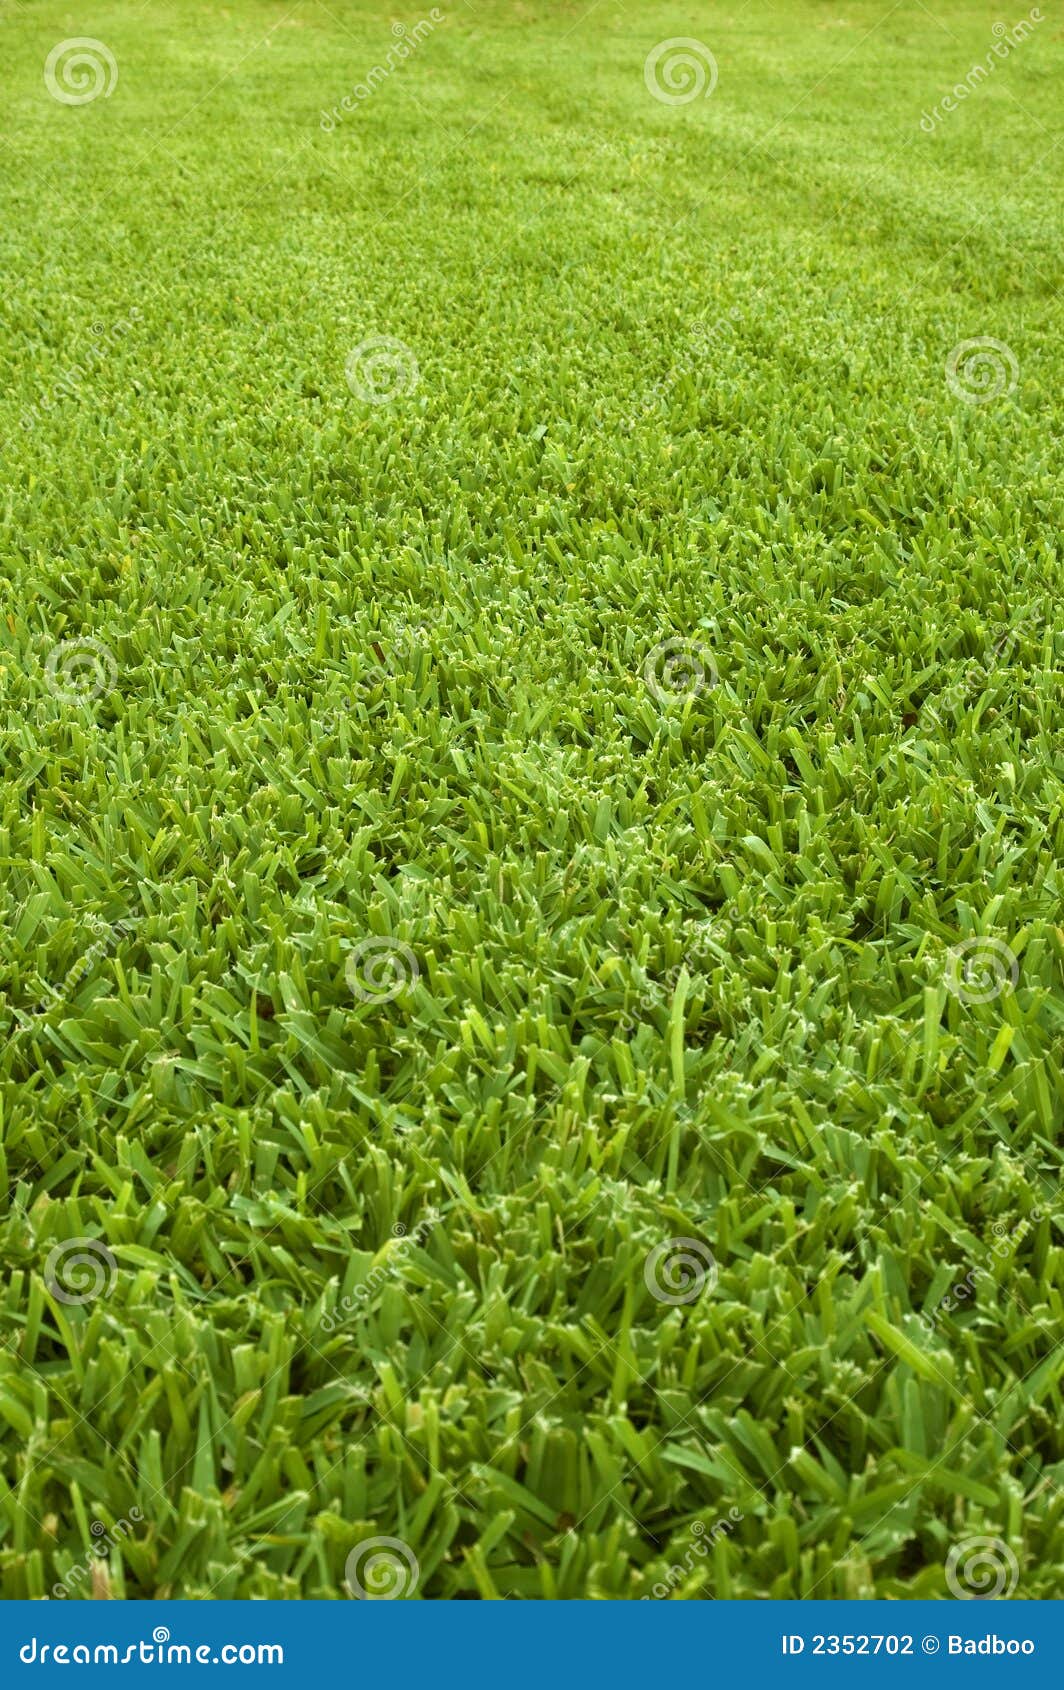 Азиатскую штучку имеют на зелёной лужайке